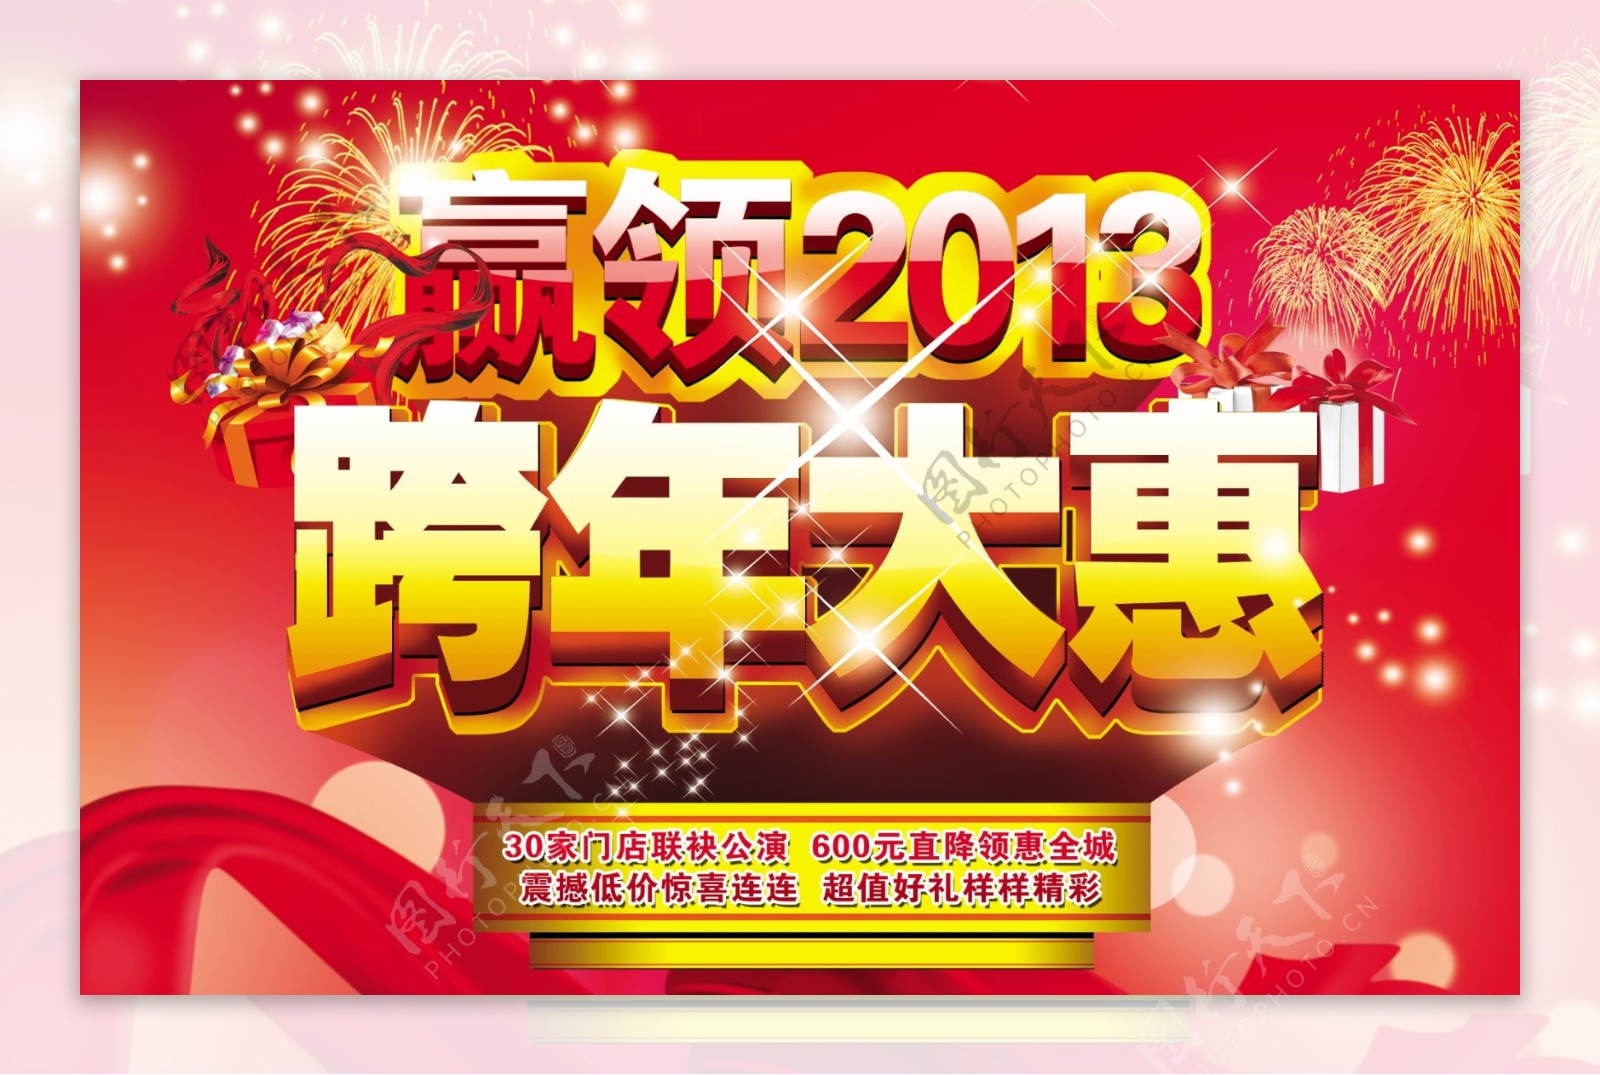 2013年跨年大惠海报设计PSD源文件